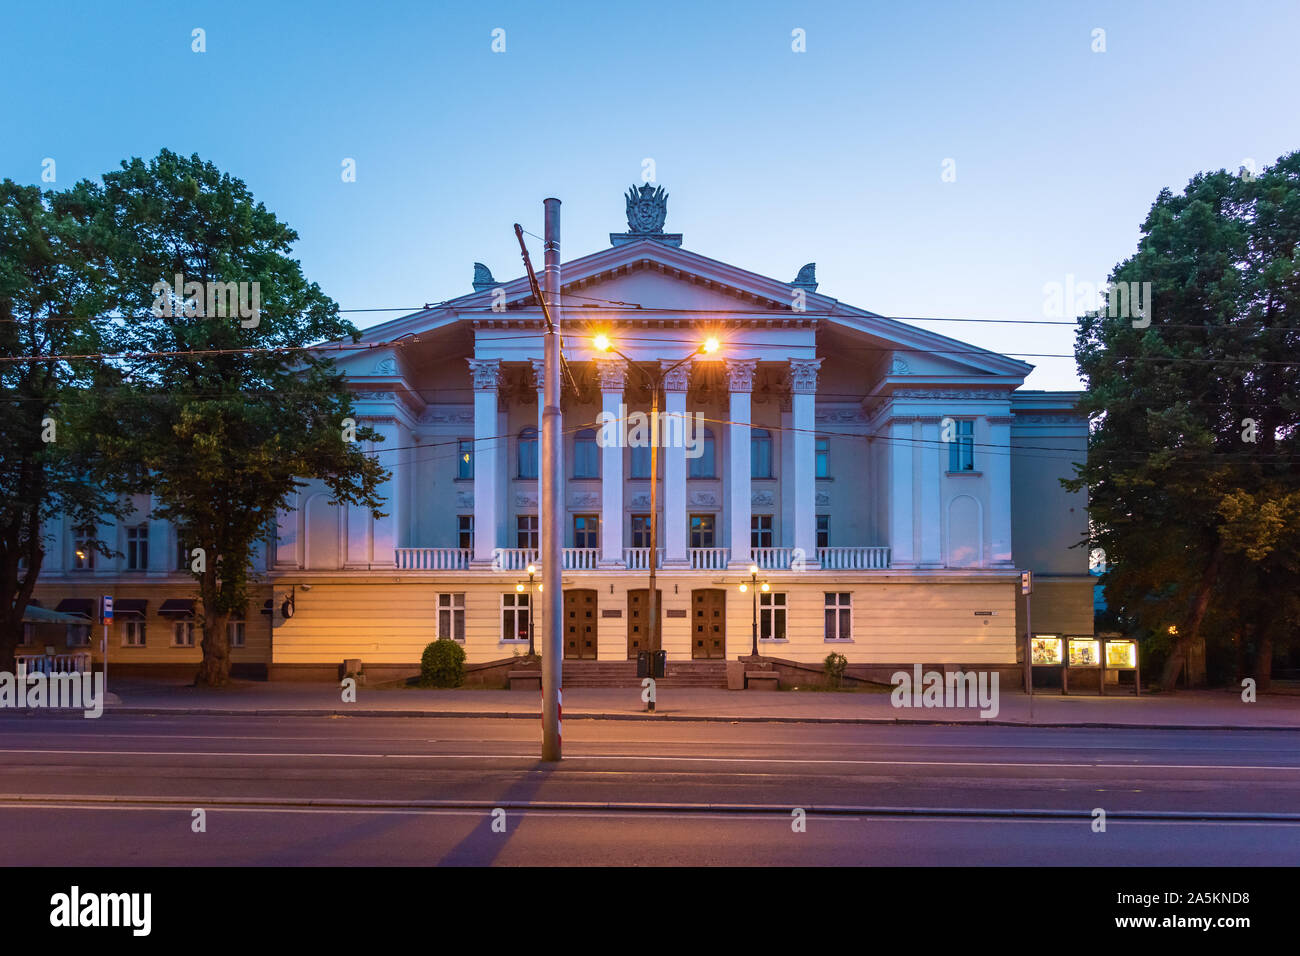 Russian Cultural Centre, Tallinn, Estonia Stock Photo